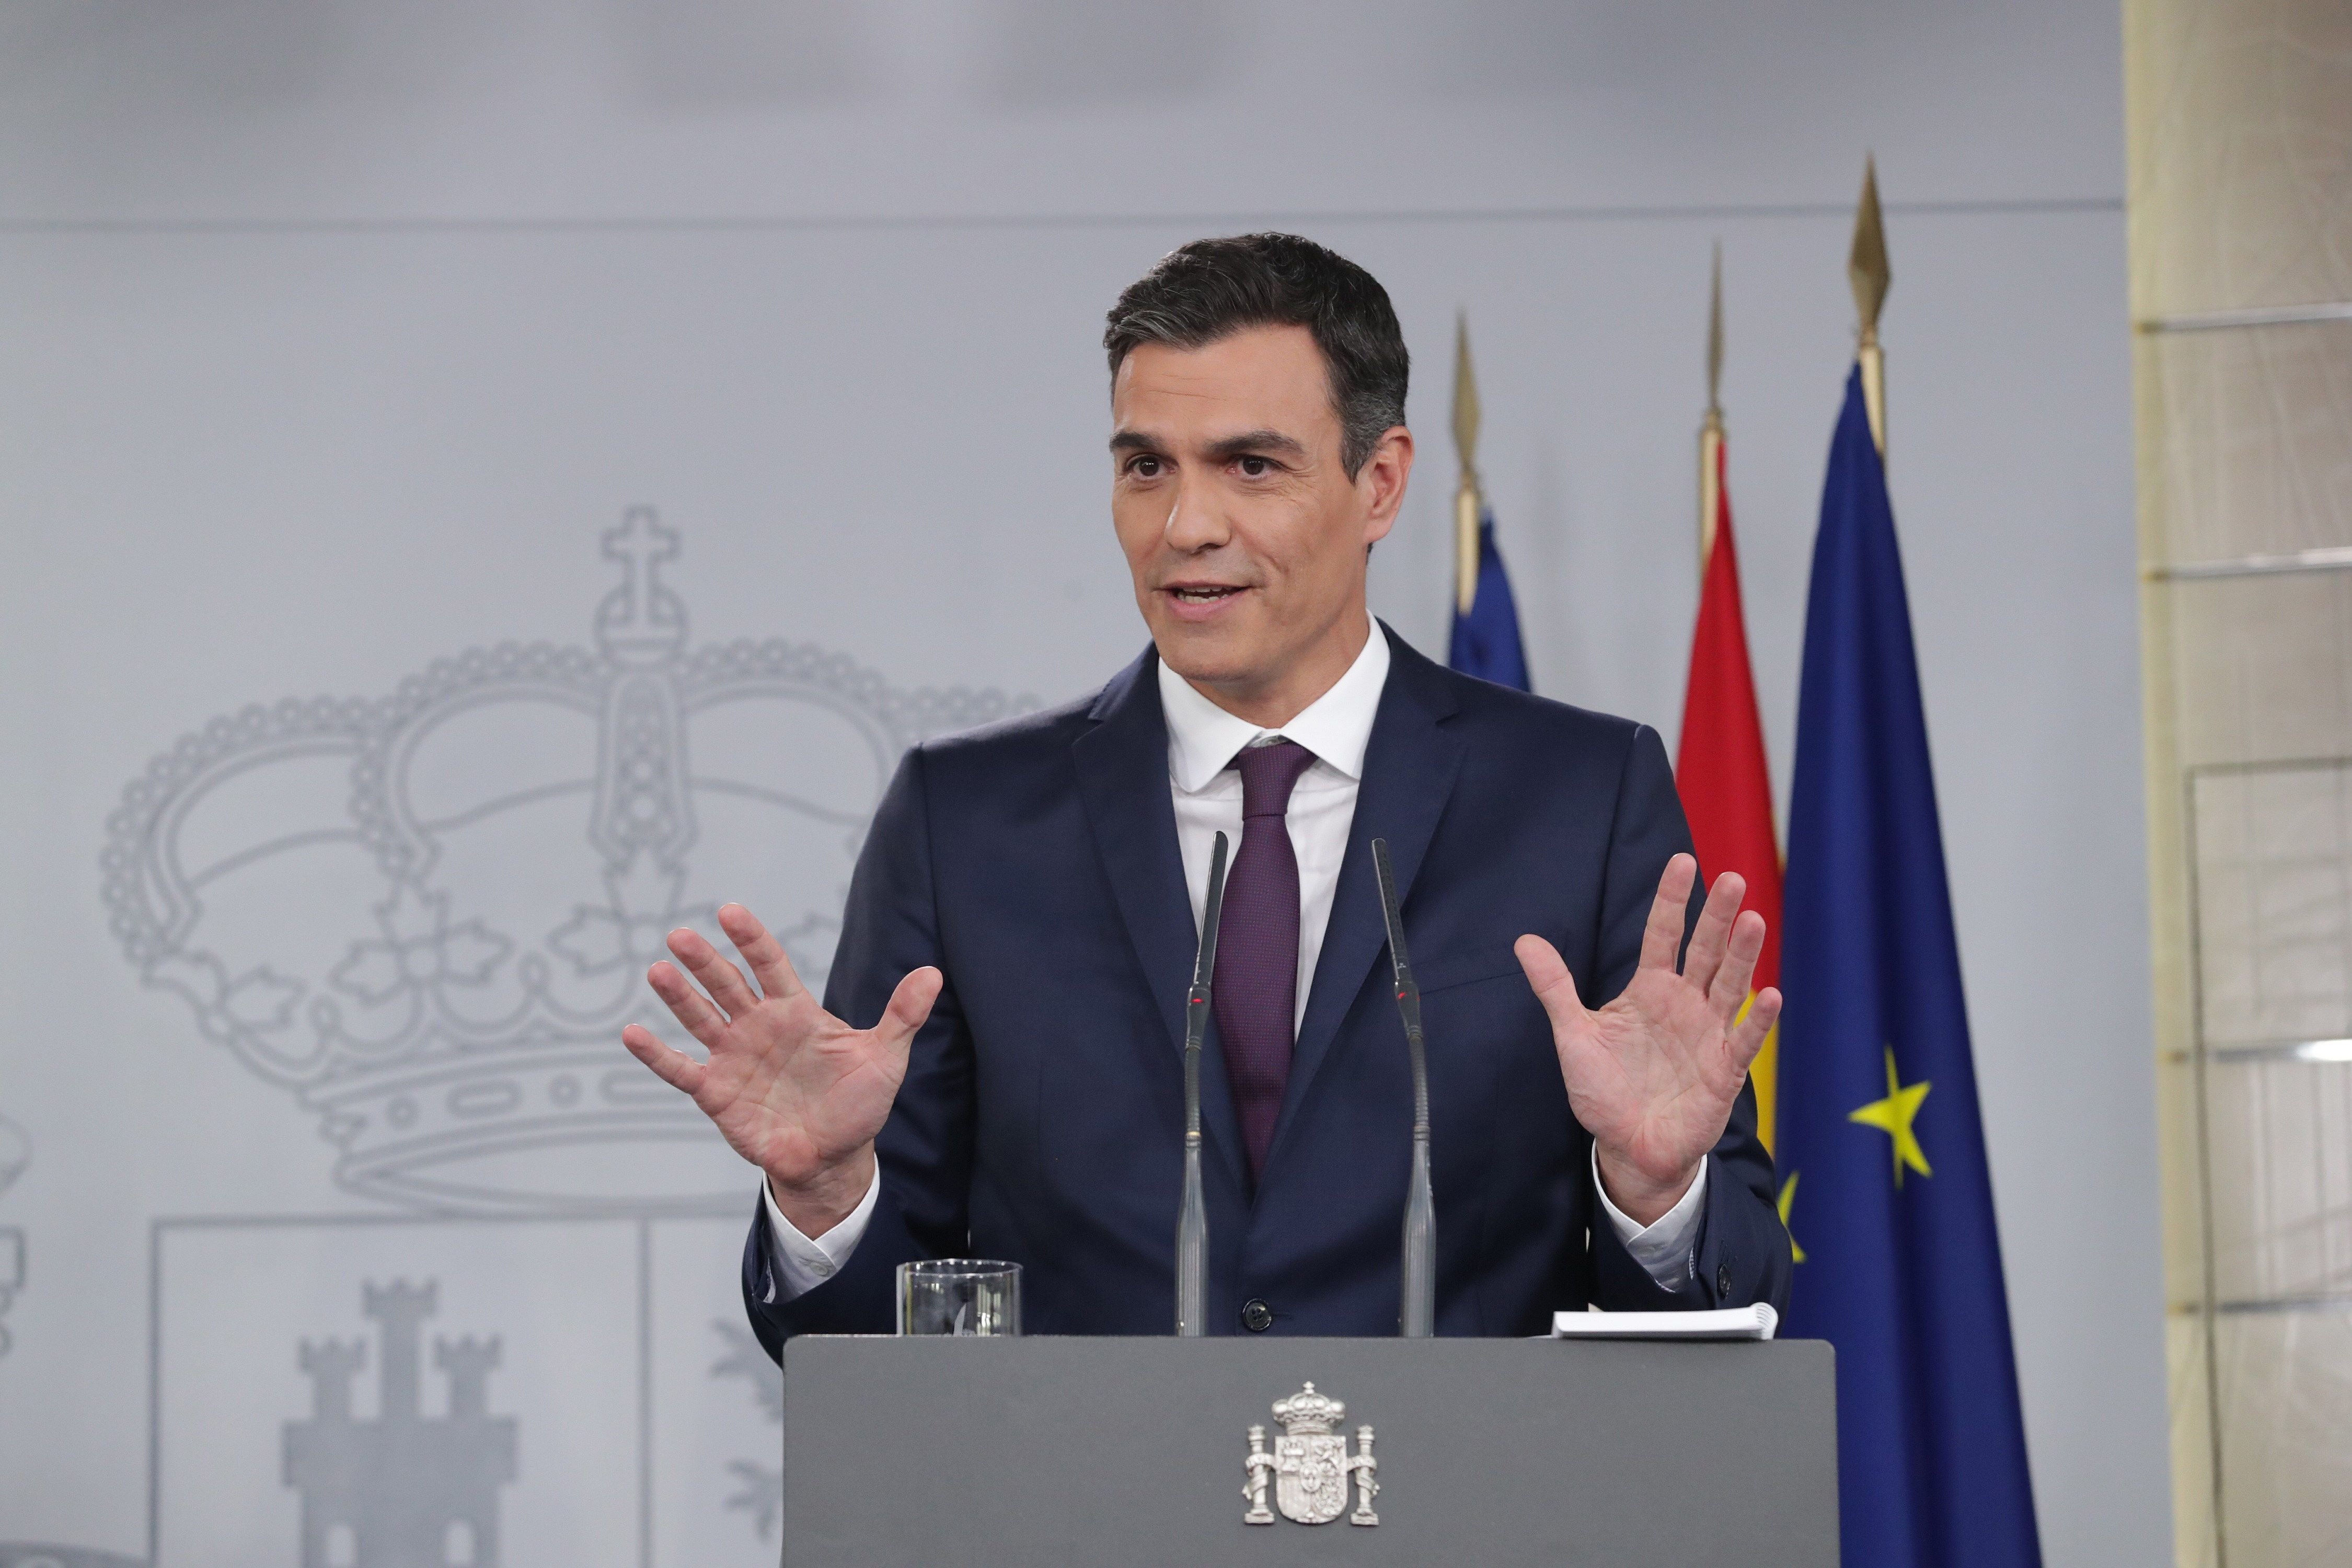 El miedo se apodera de la prensa española, que maldice y rechaza la reunión bilateral